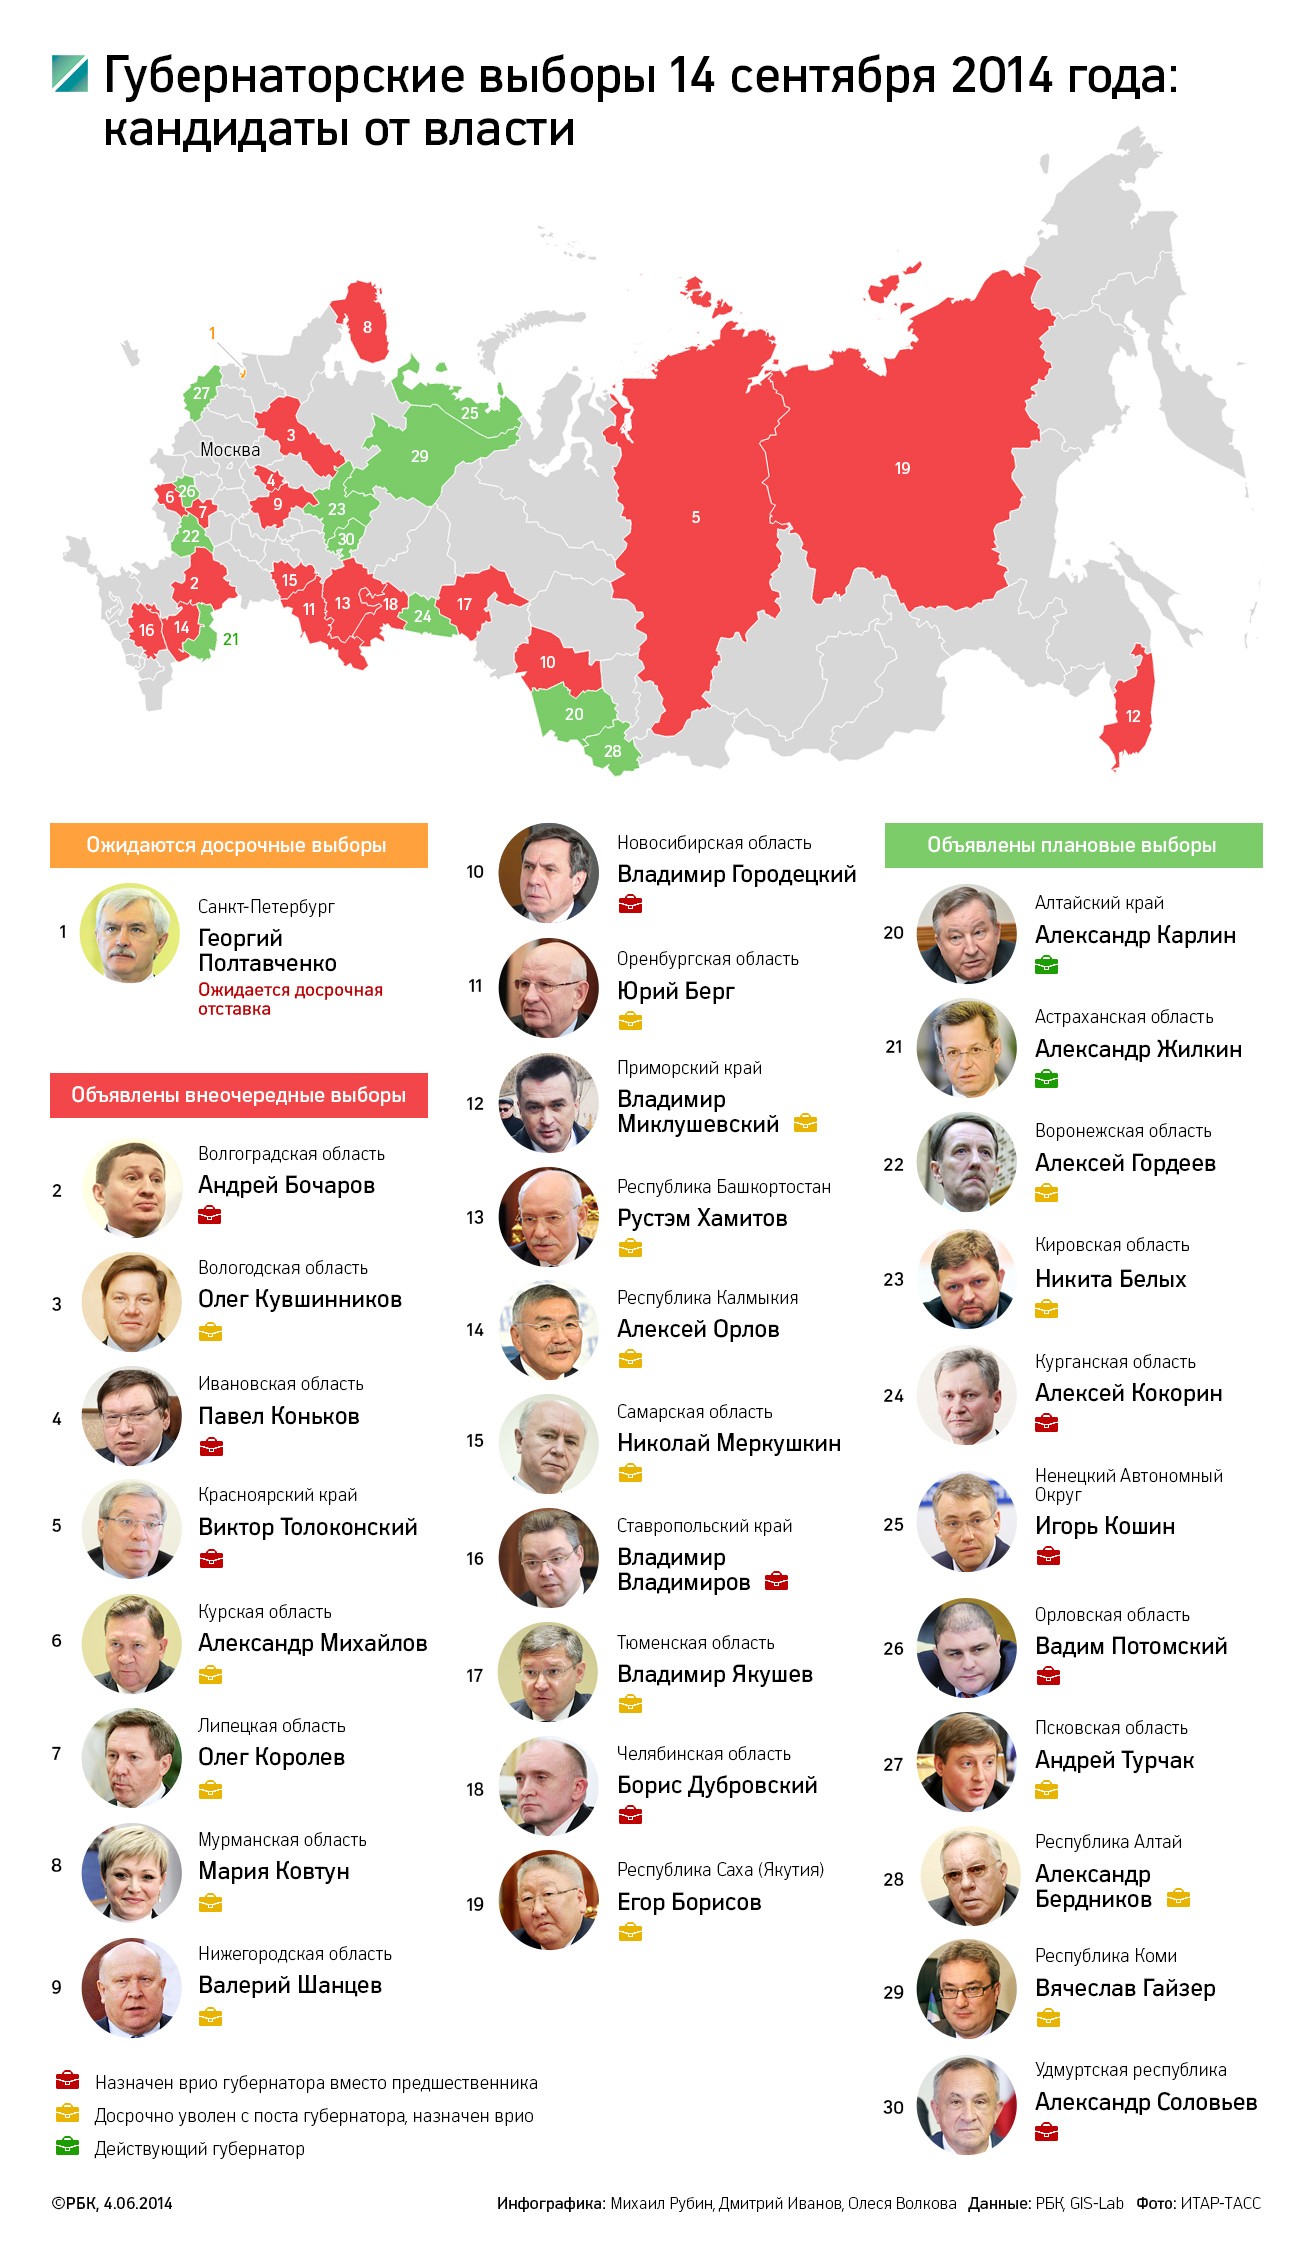 Полтавченко выйдет последним: кто из губернаторов переизберется осенью